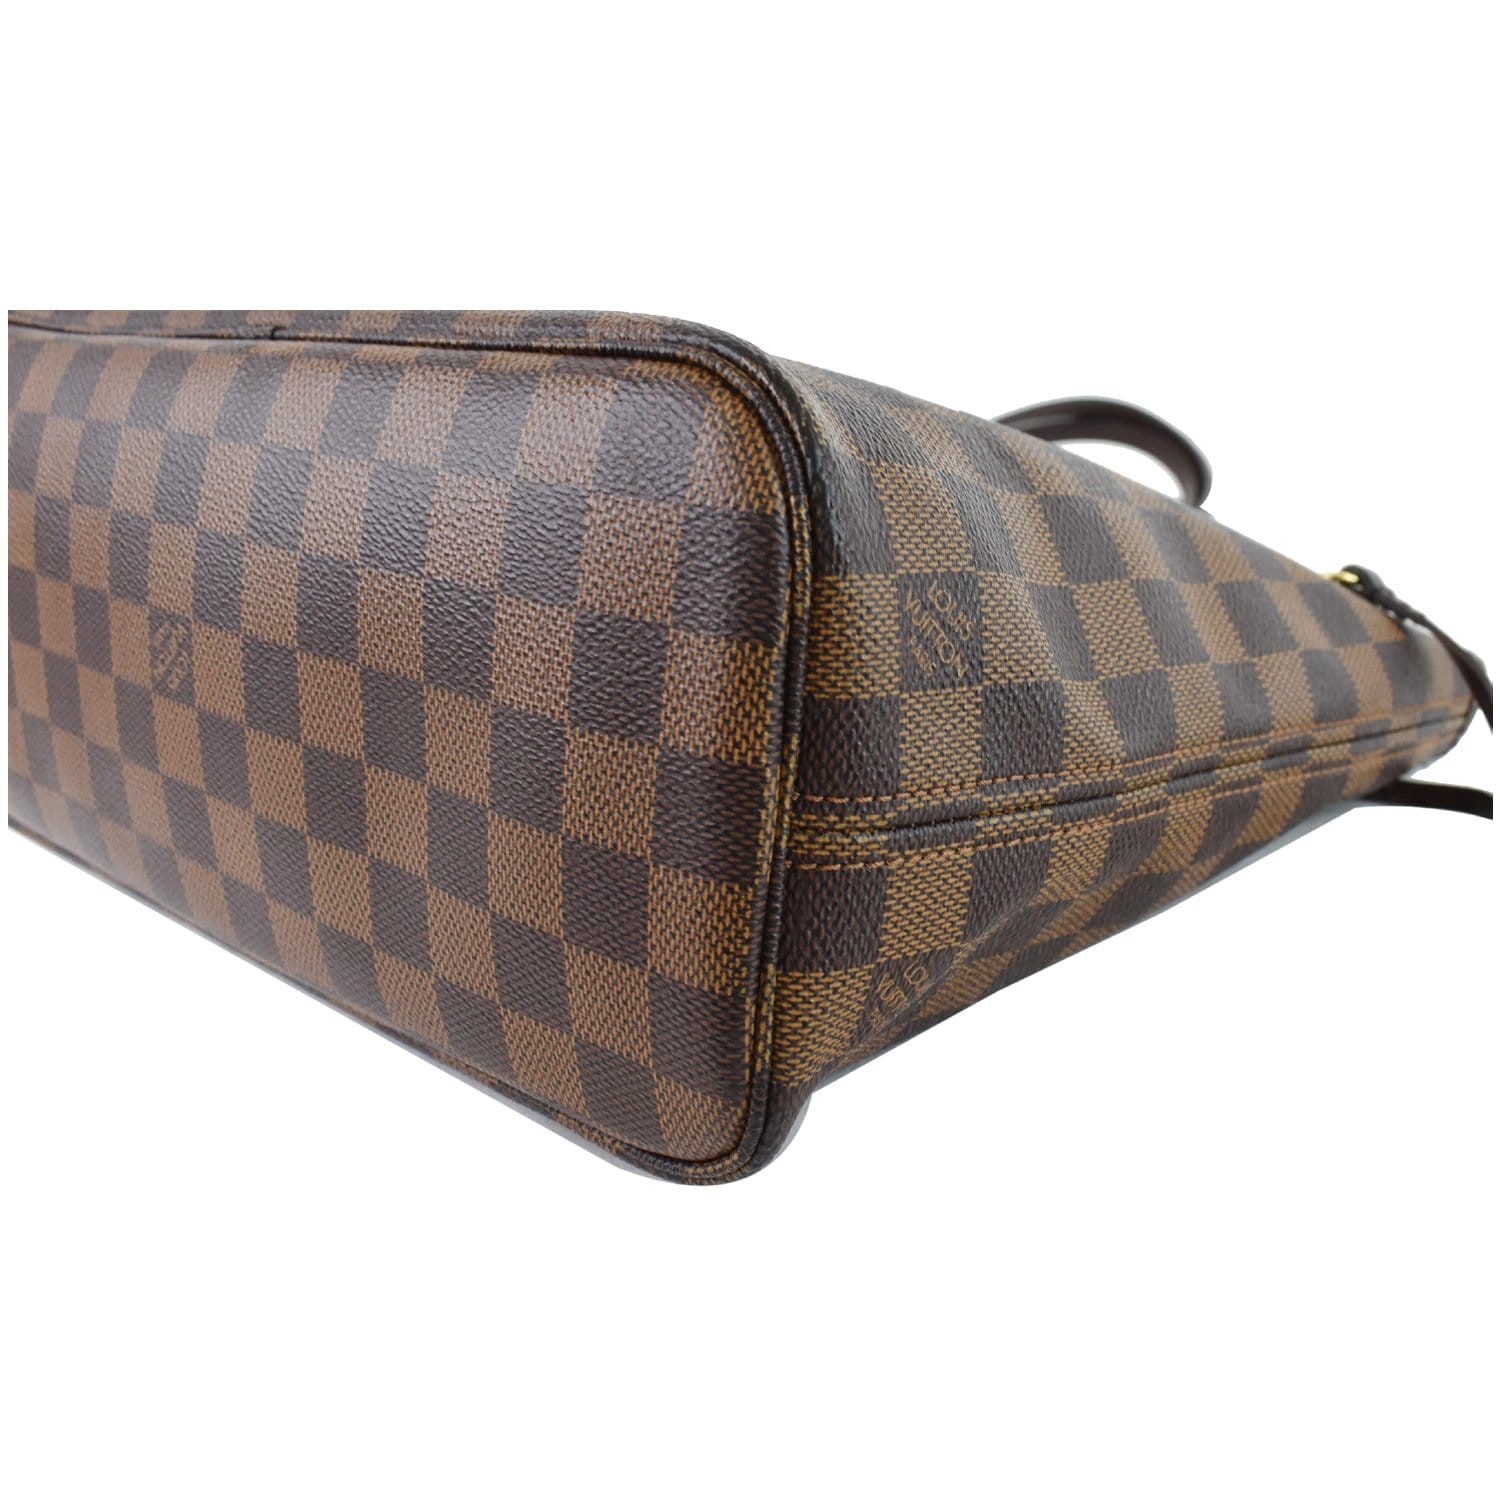 Néonoé bb leather handbag Louis Vuitton Brown in Leather - 29739571